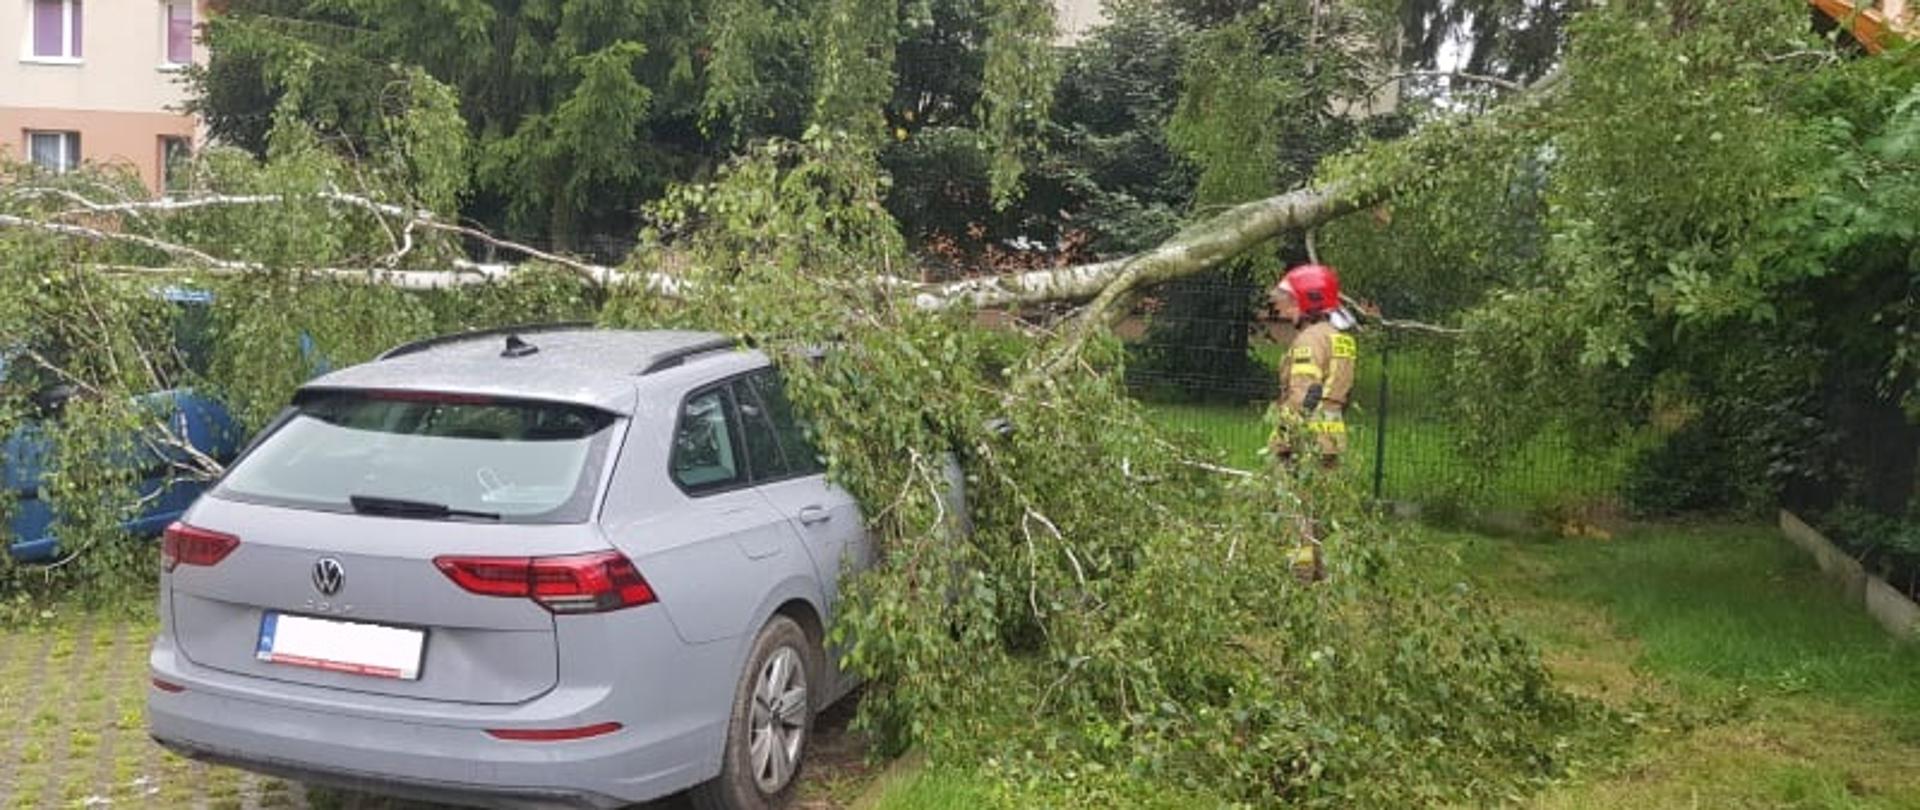 Drzewo przewrócone na dwa samochody osobowe na parkingu.